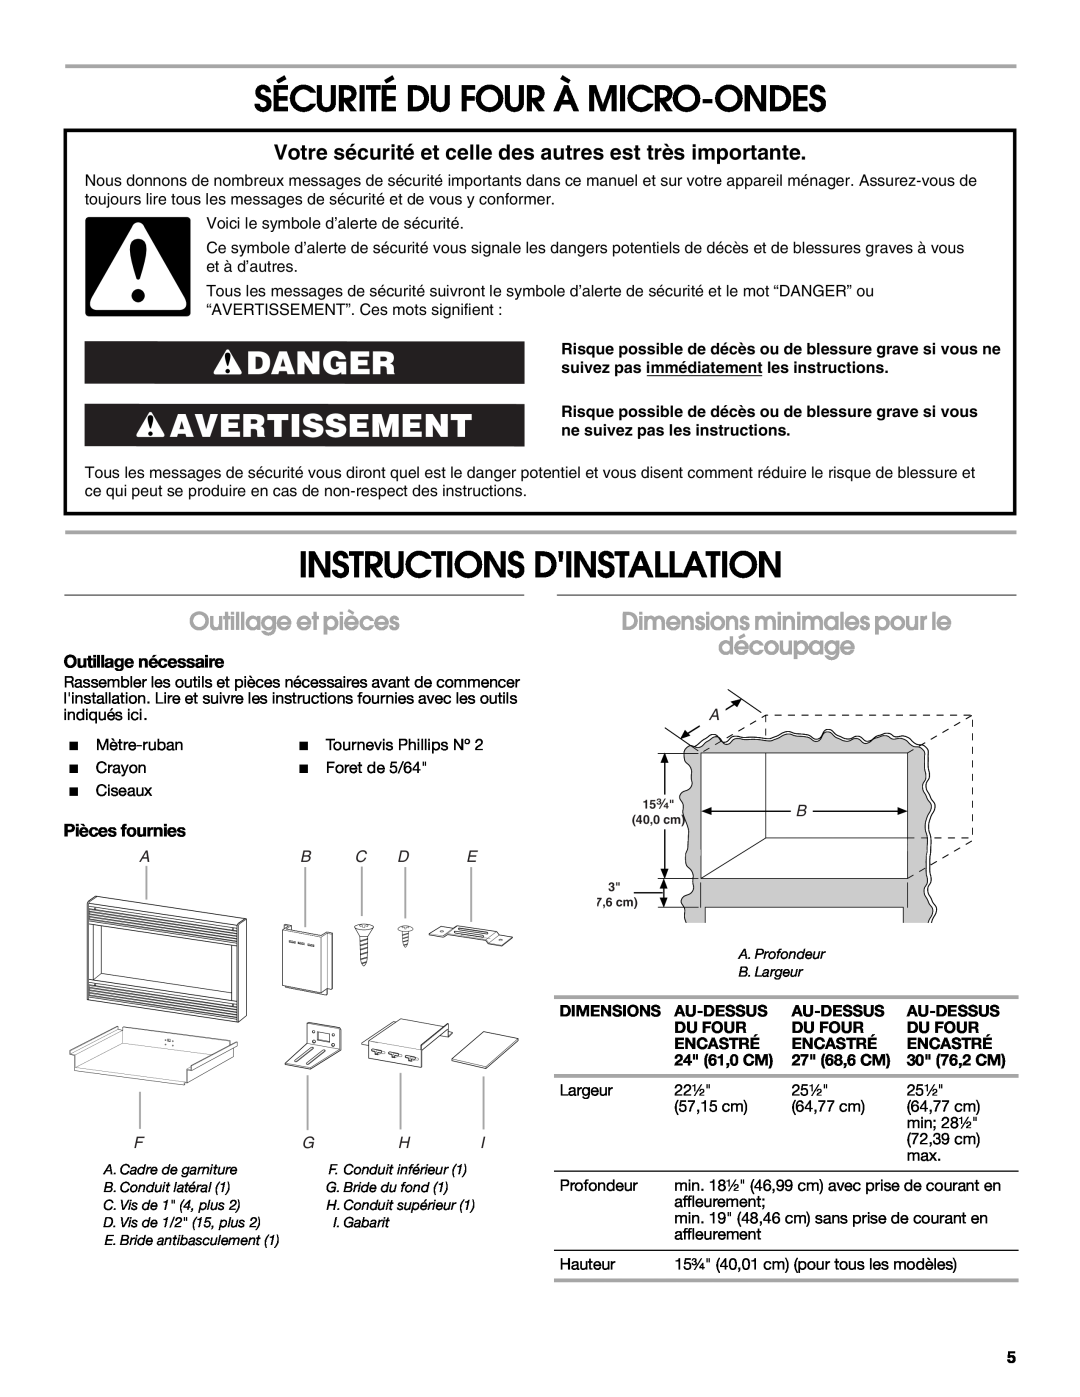 Whirlpool MK1157XV Sécurité Du Four À Micro-Ondes, Instructions Dinstallation, Danger Avertissement, Outillage et pièces 